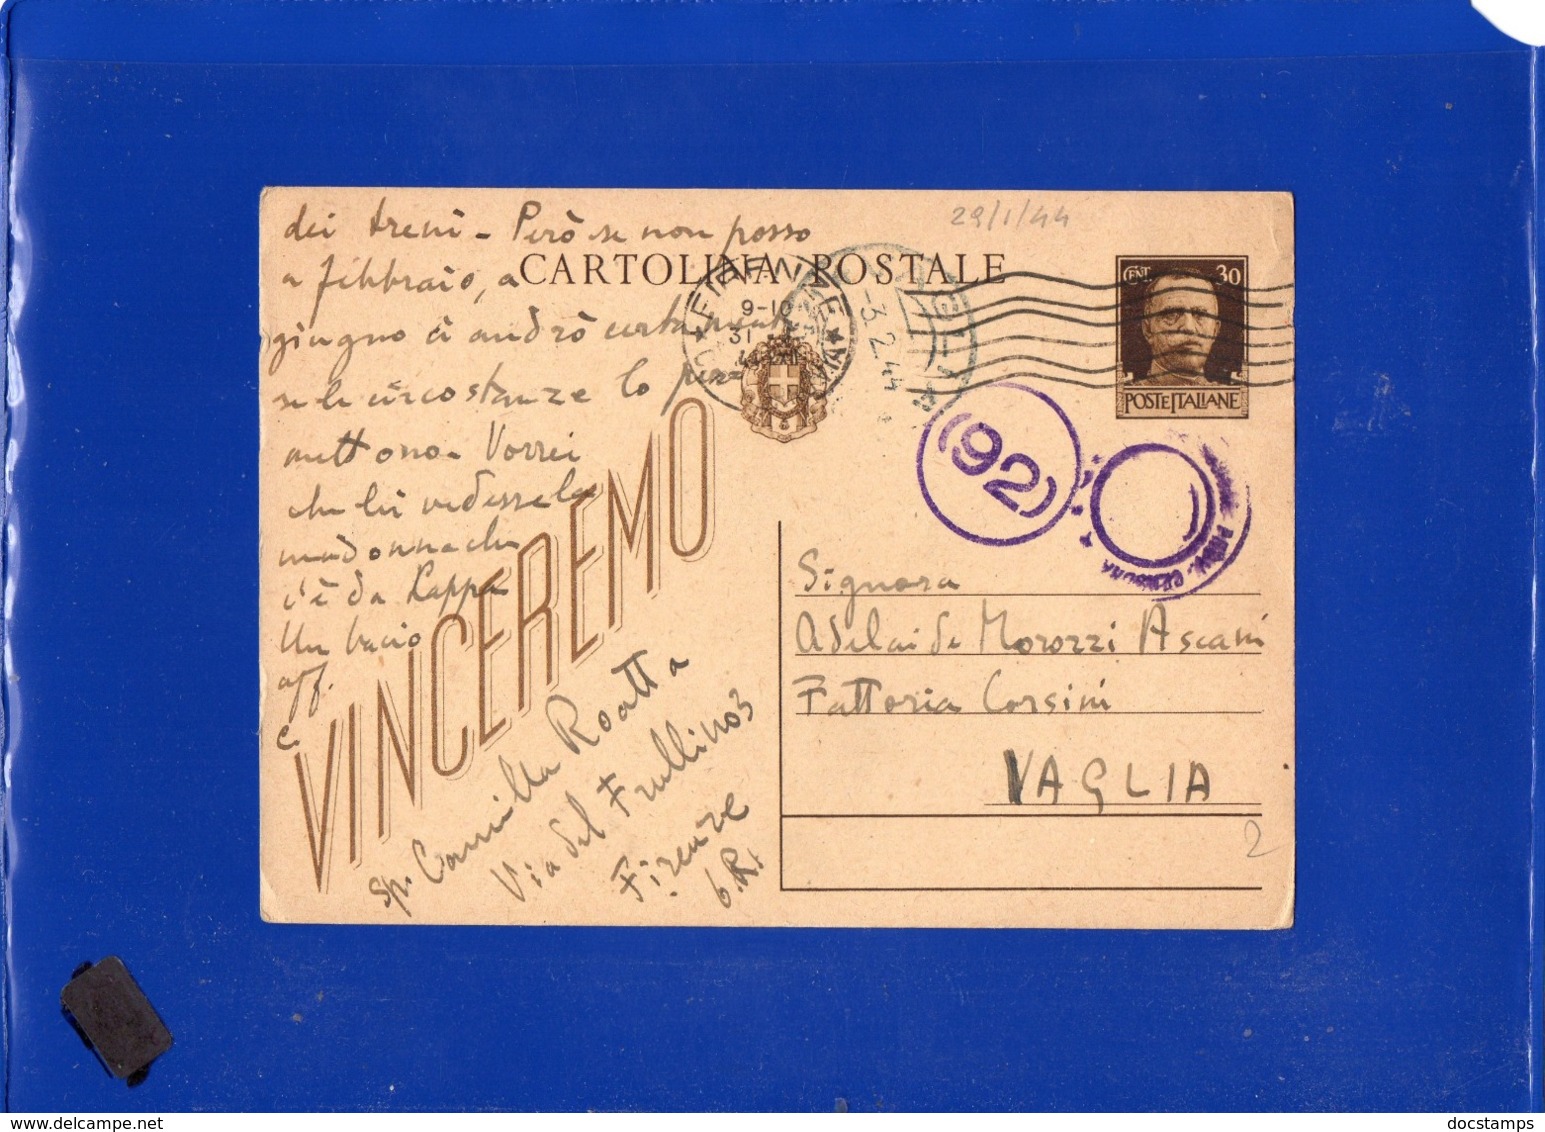 ##(DAN1910)-31-1-1944-Cartolina Postale Vinceremo Cent 30 Da Firenze Per Vaglia, Bolli Di Censura - Marcophilia